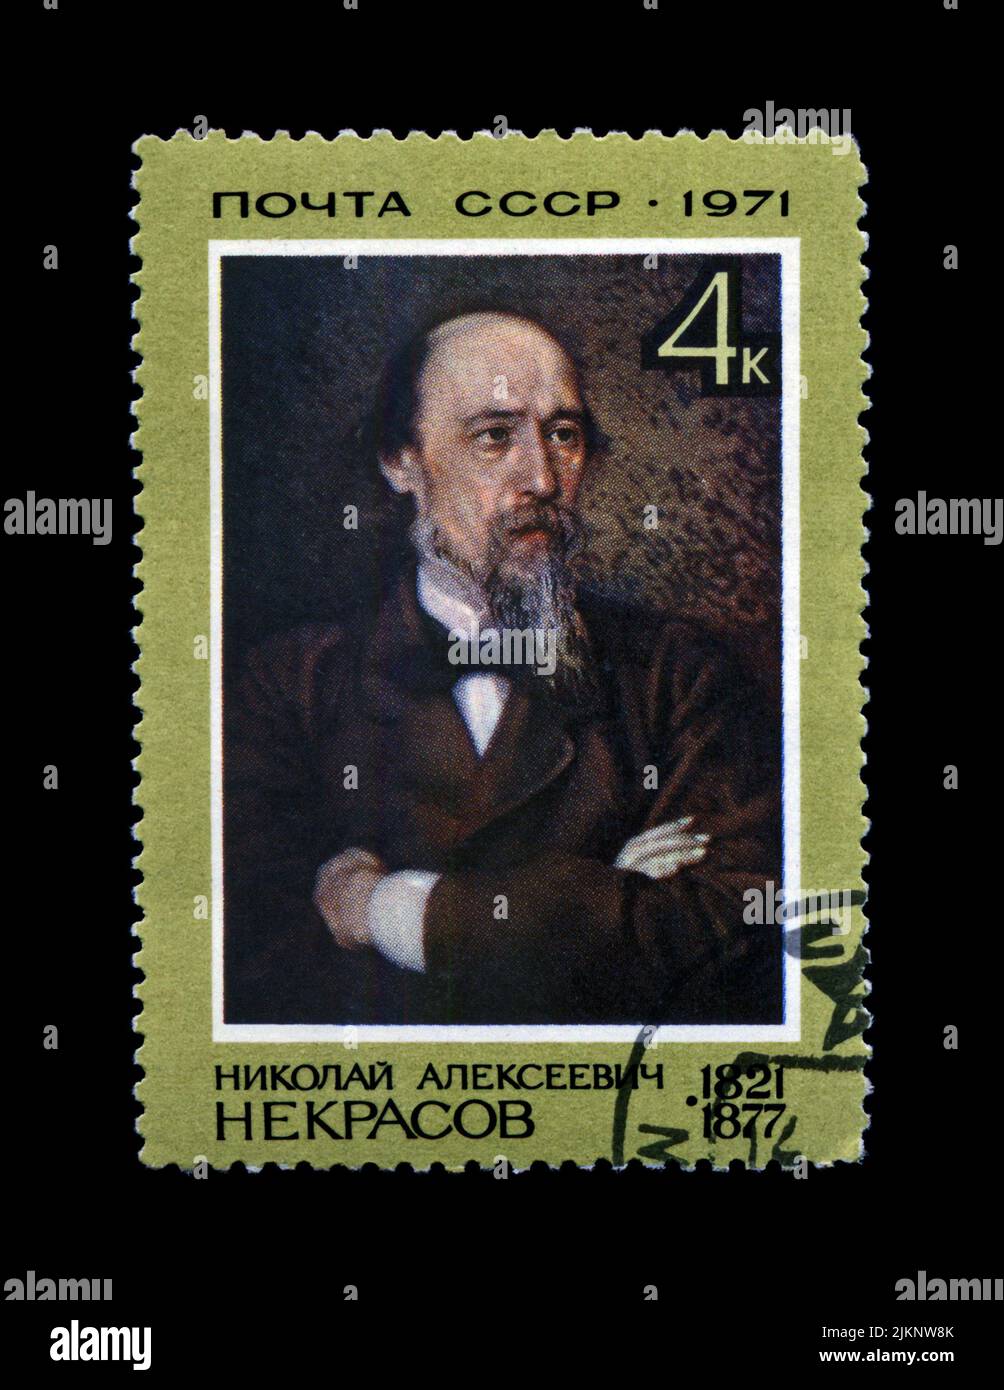 Nikolai Nekrasov (1821-1877), berühmter russischer Dichter, um 1971. In der UdSSR abgestempelter Vintage-Briefmarke, isoliert auf schwarzem Hintergrund gedruckt. Stockfoto